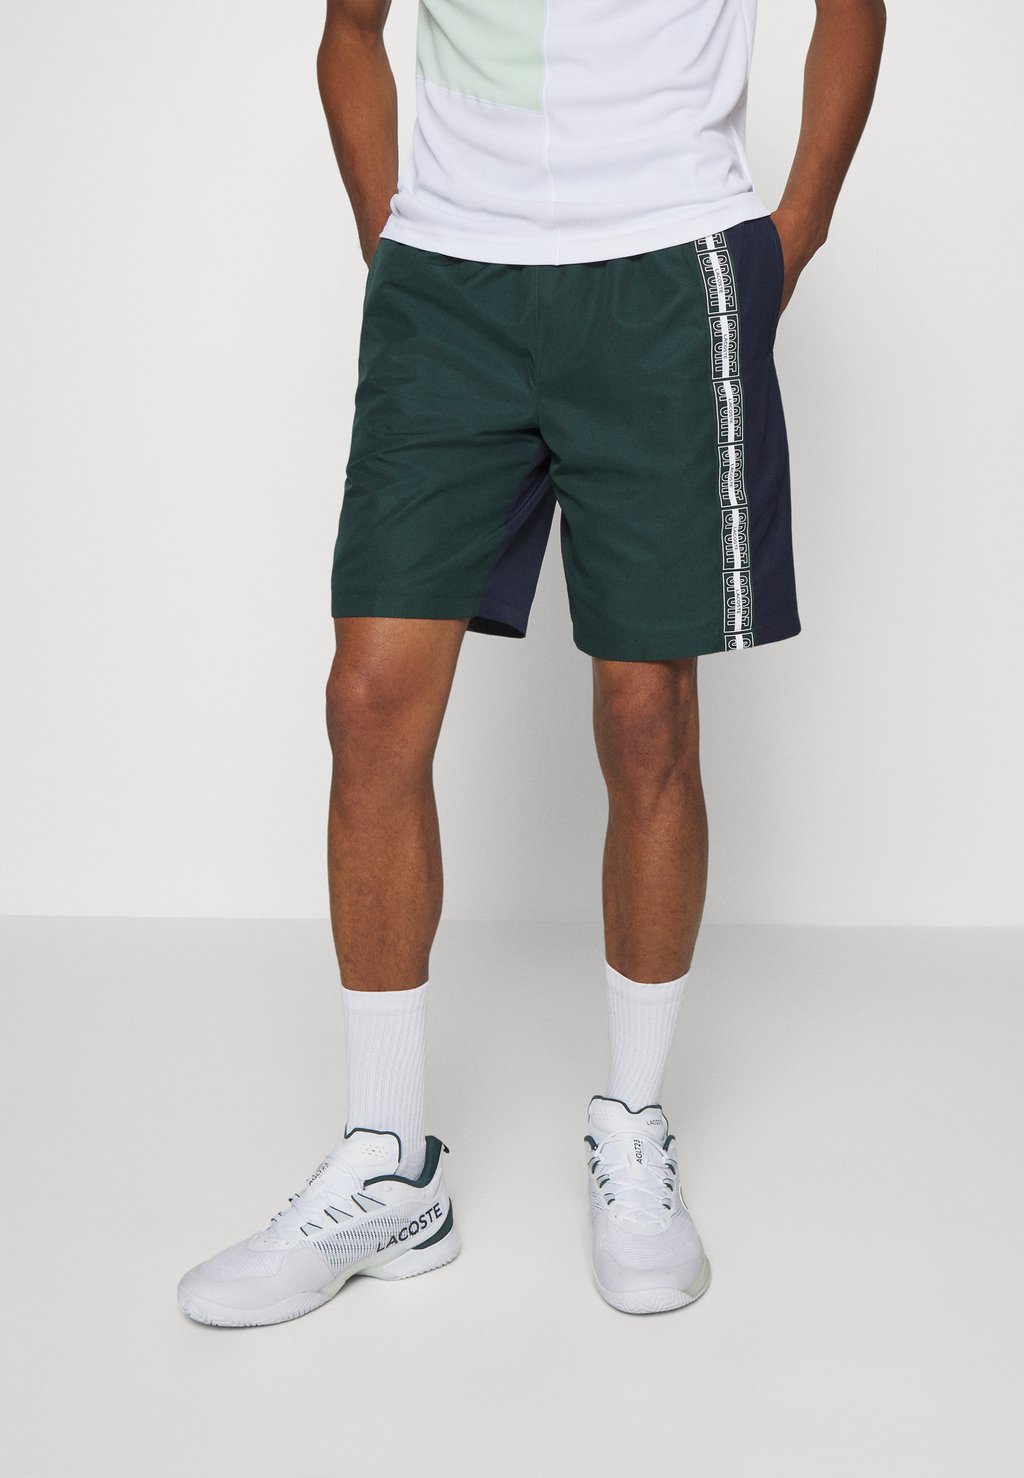 Спортивные шорты Tennis Lacoste, цвет vert/bleu marine/blanc спортивные шорты sports shorts lacoste цвет bleu bleu marine blanc ina